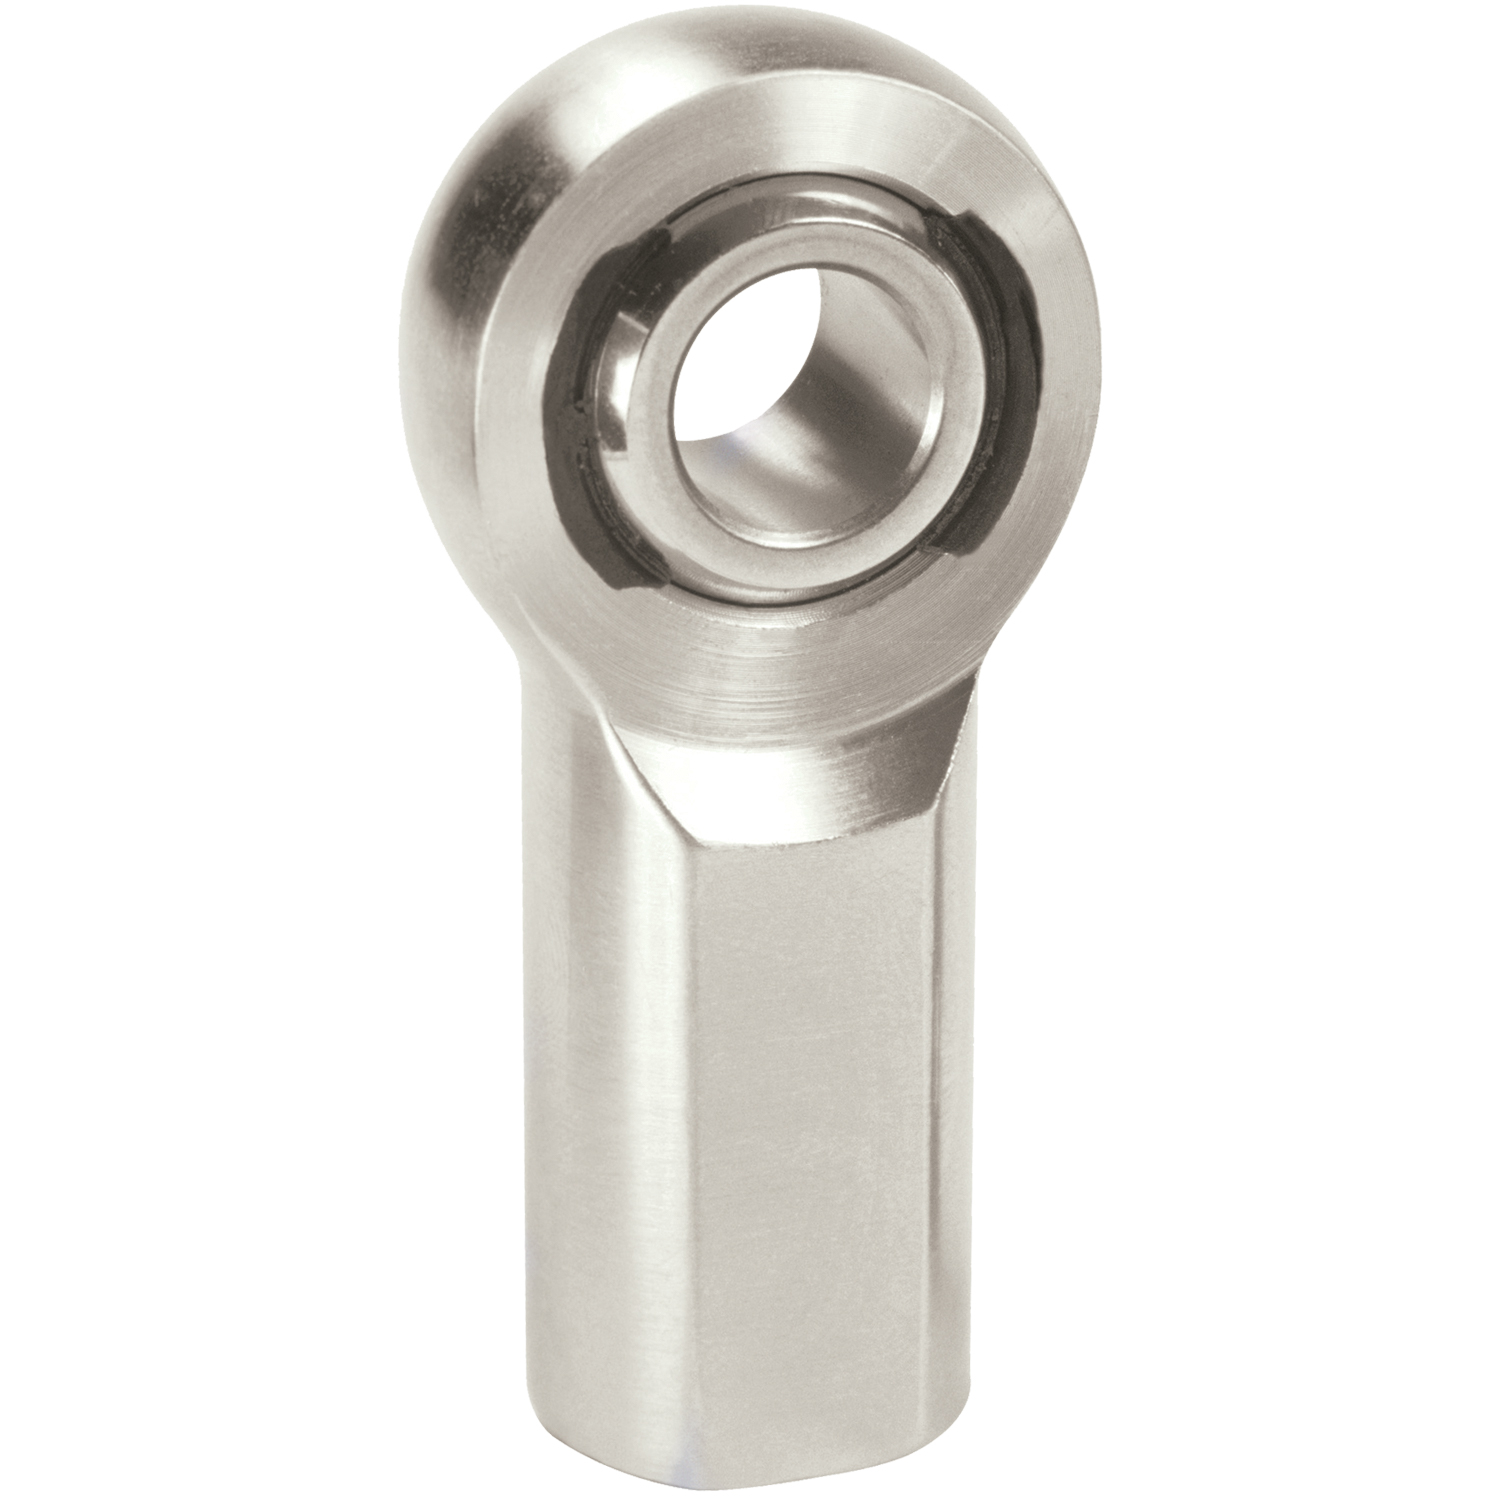 XF Chromoly Steel Series Rod End Hole I.D.: .3750"